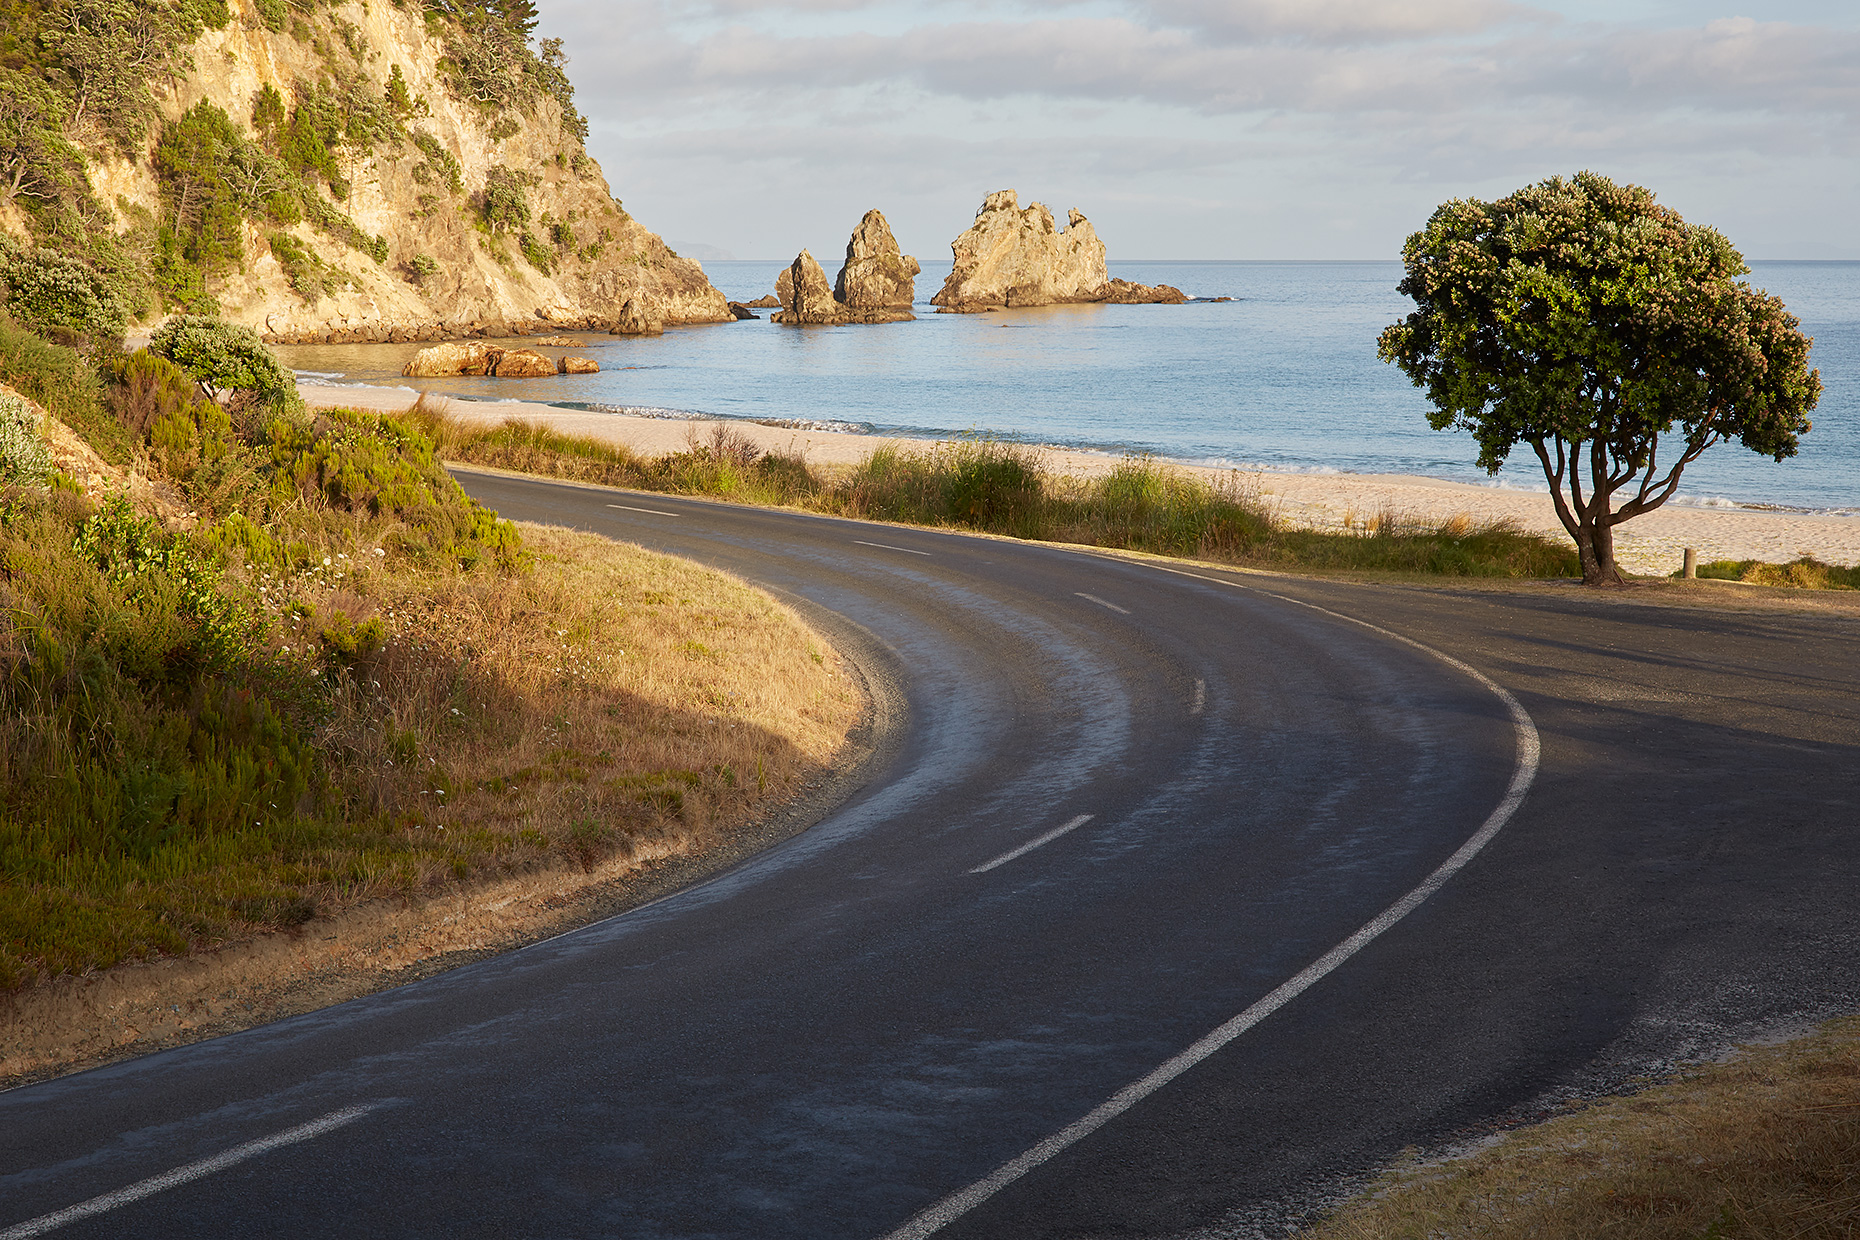 Curving coastal road